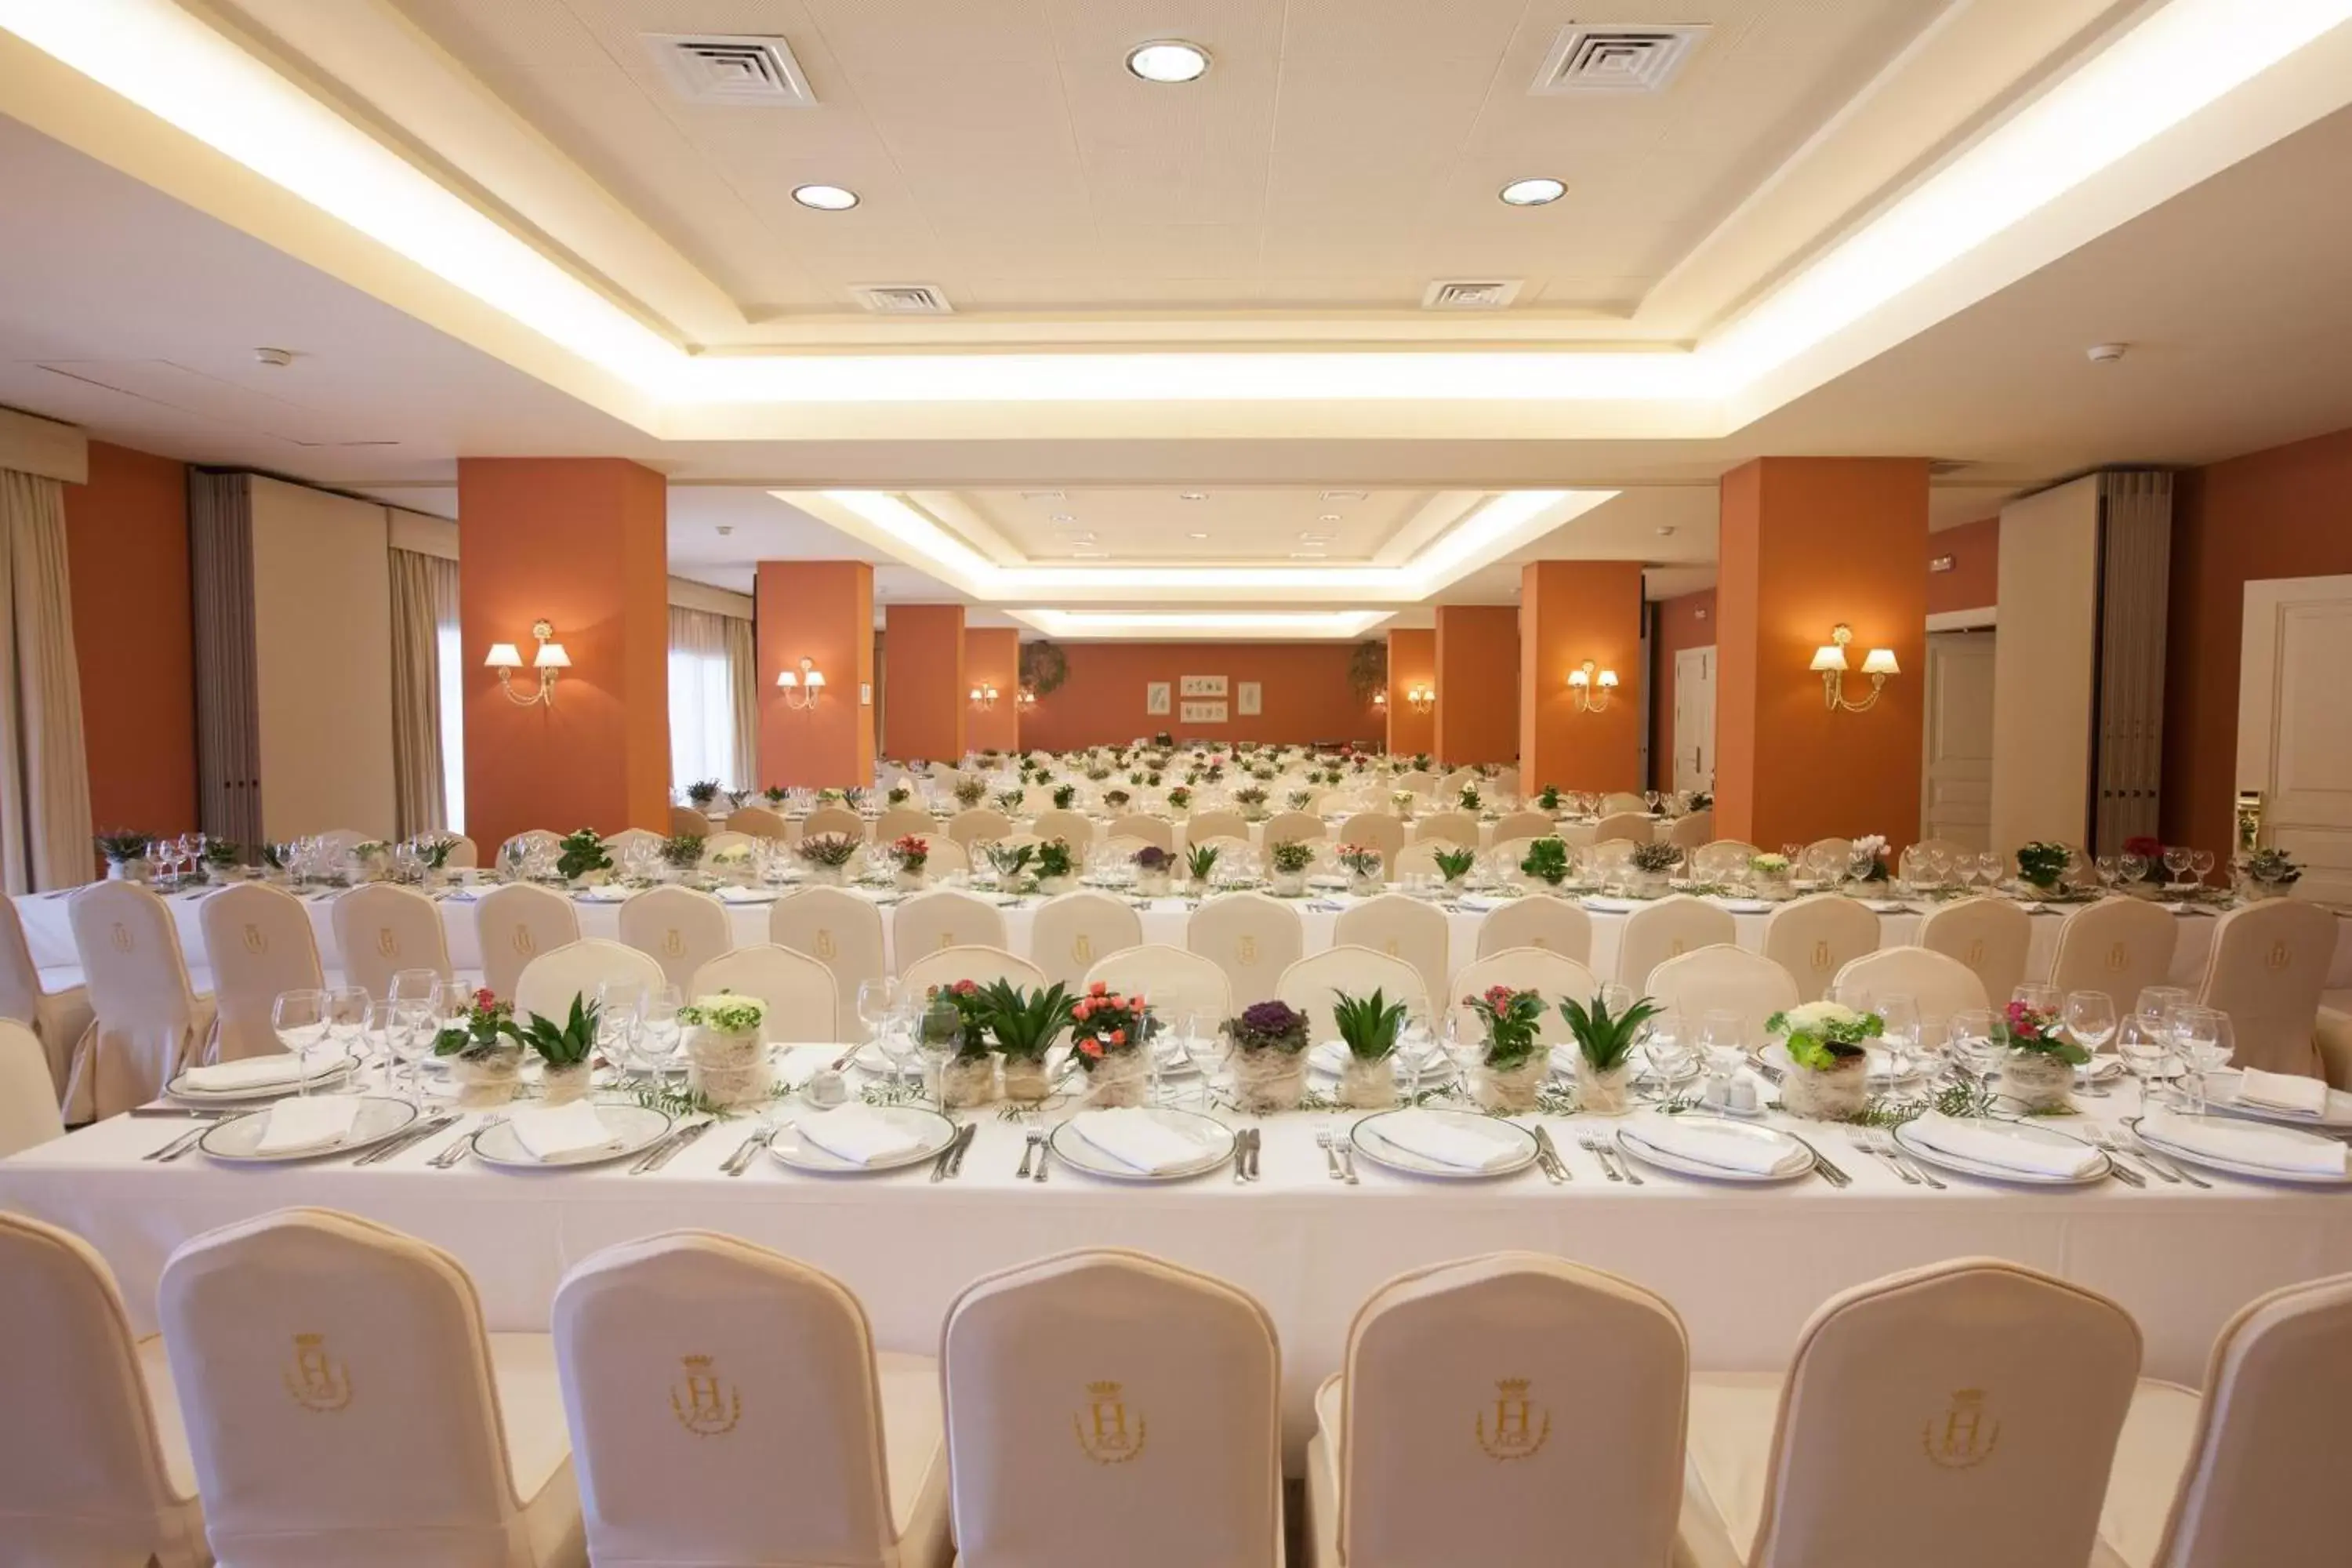 Banquet/Function facilities, Banquet Facilities in Hotel Duque de Najera